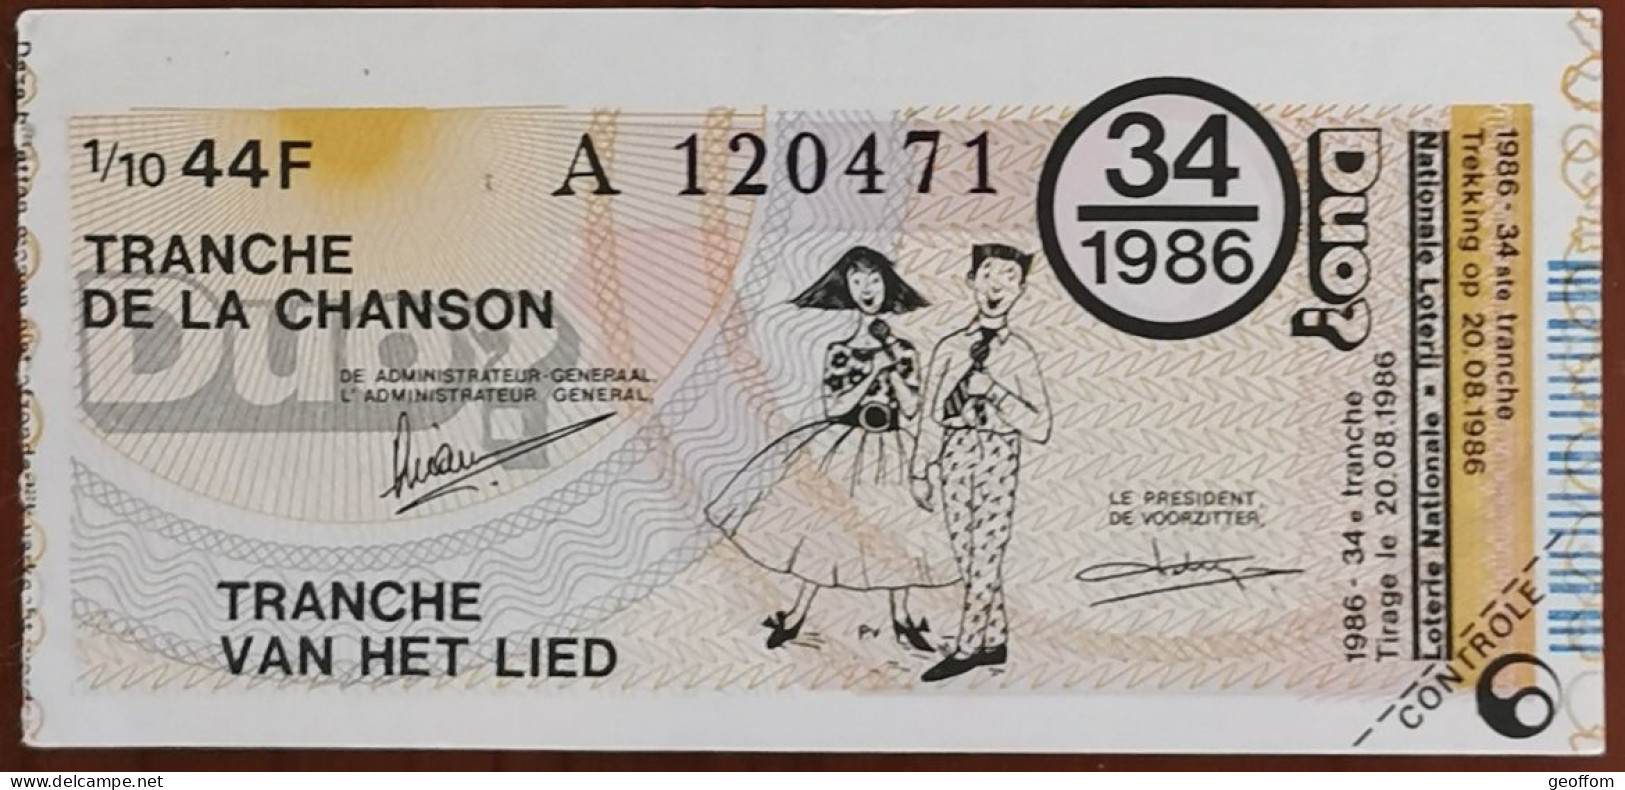 Billet De Loterie Nationale Belgique 1986 34e Tranche De La Chanson - 20-8-1986 - Billetes De Lotería